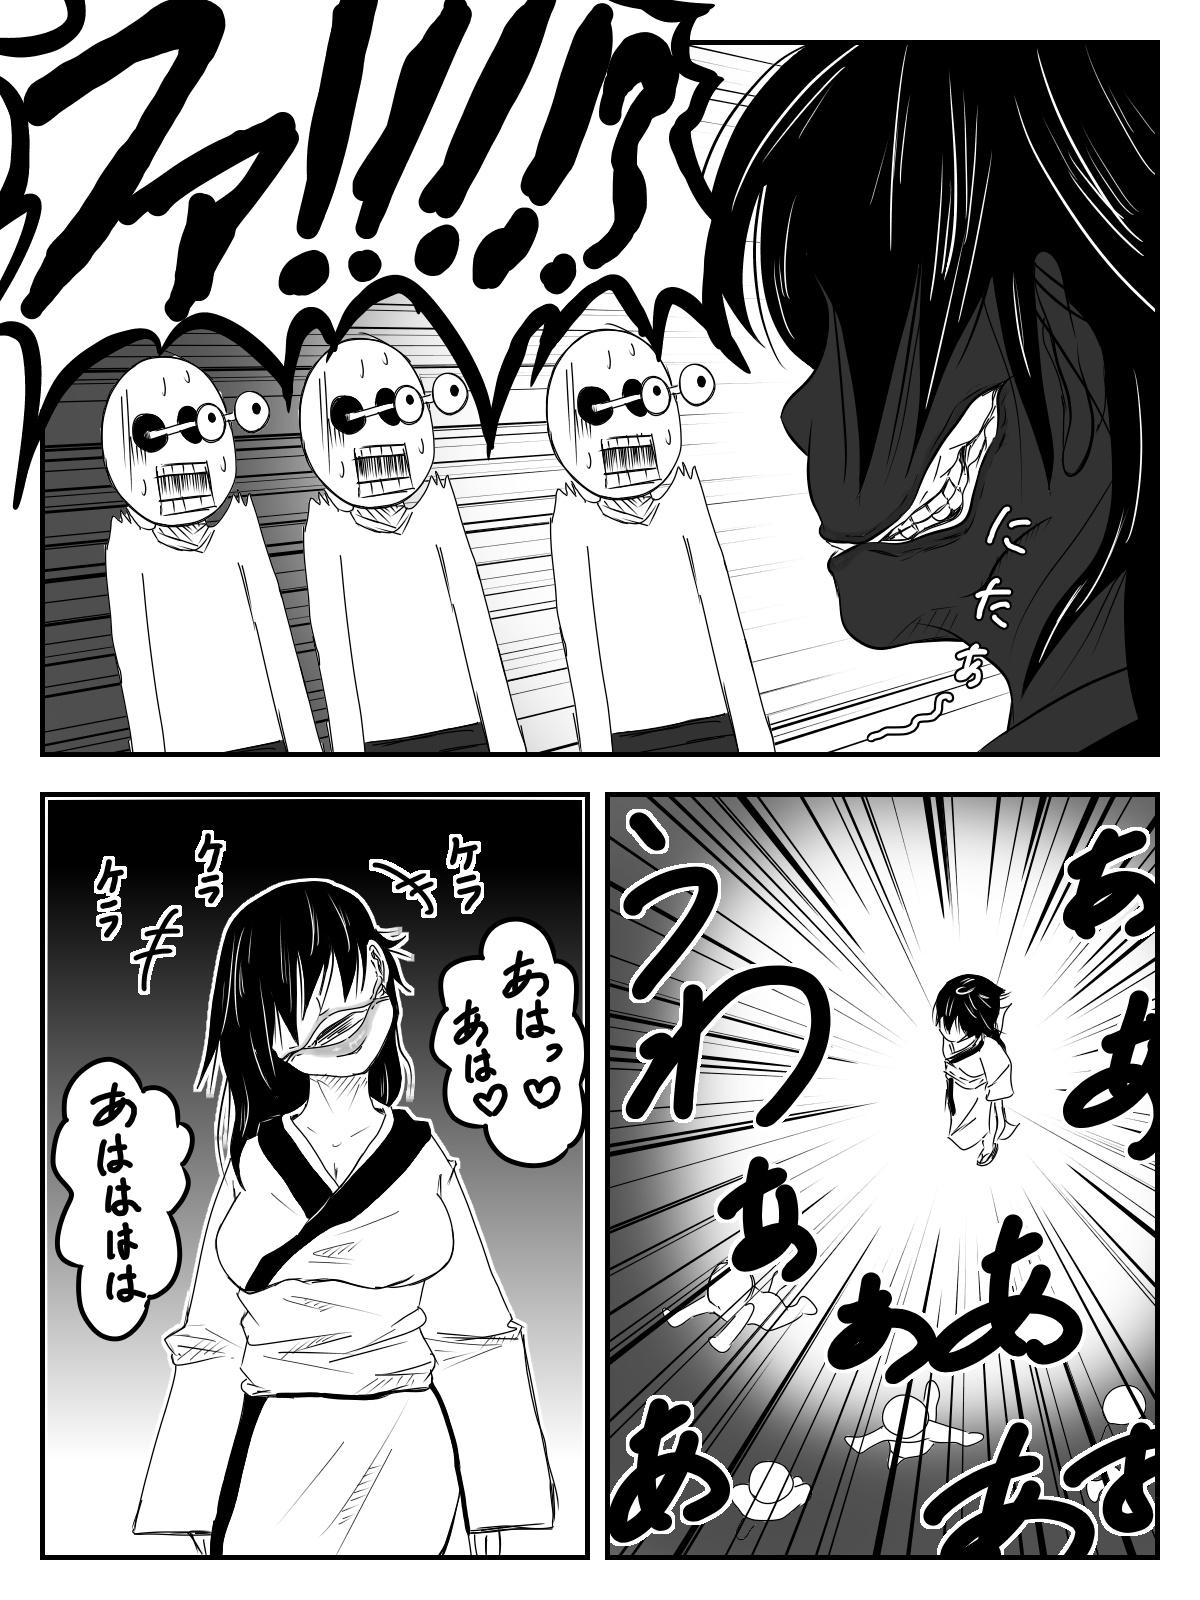 Rubbing Kuchisake Onna ga Watashi Kirei? tte Kiite Kita kara Okashimashita - Original Stripping - Page 8